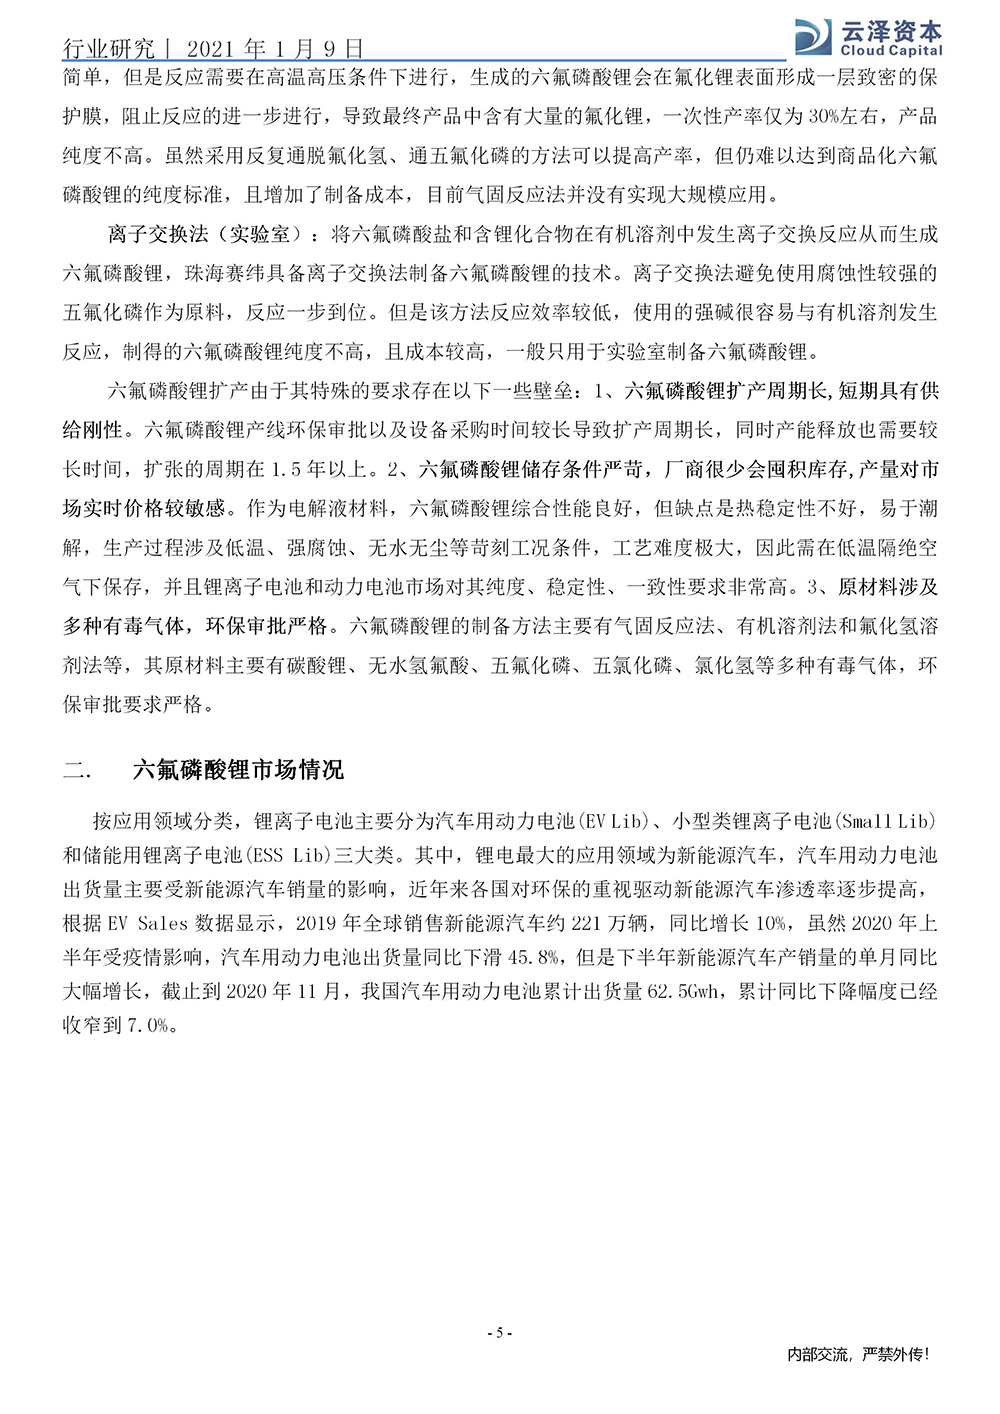 杨强、马龙：六氟磷酸锂行业研究报告_05.jpg